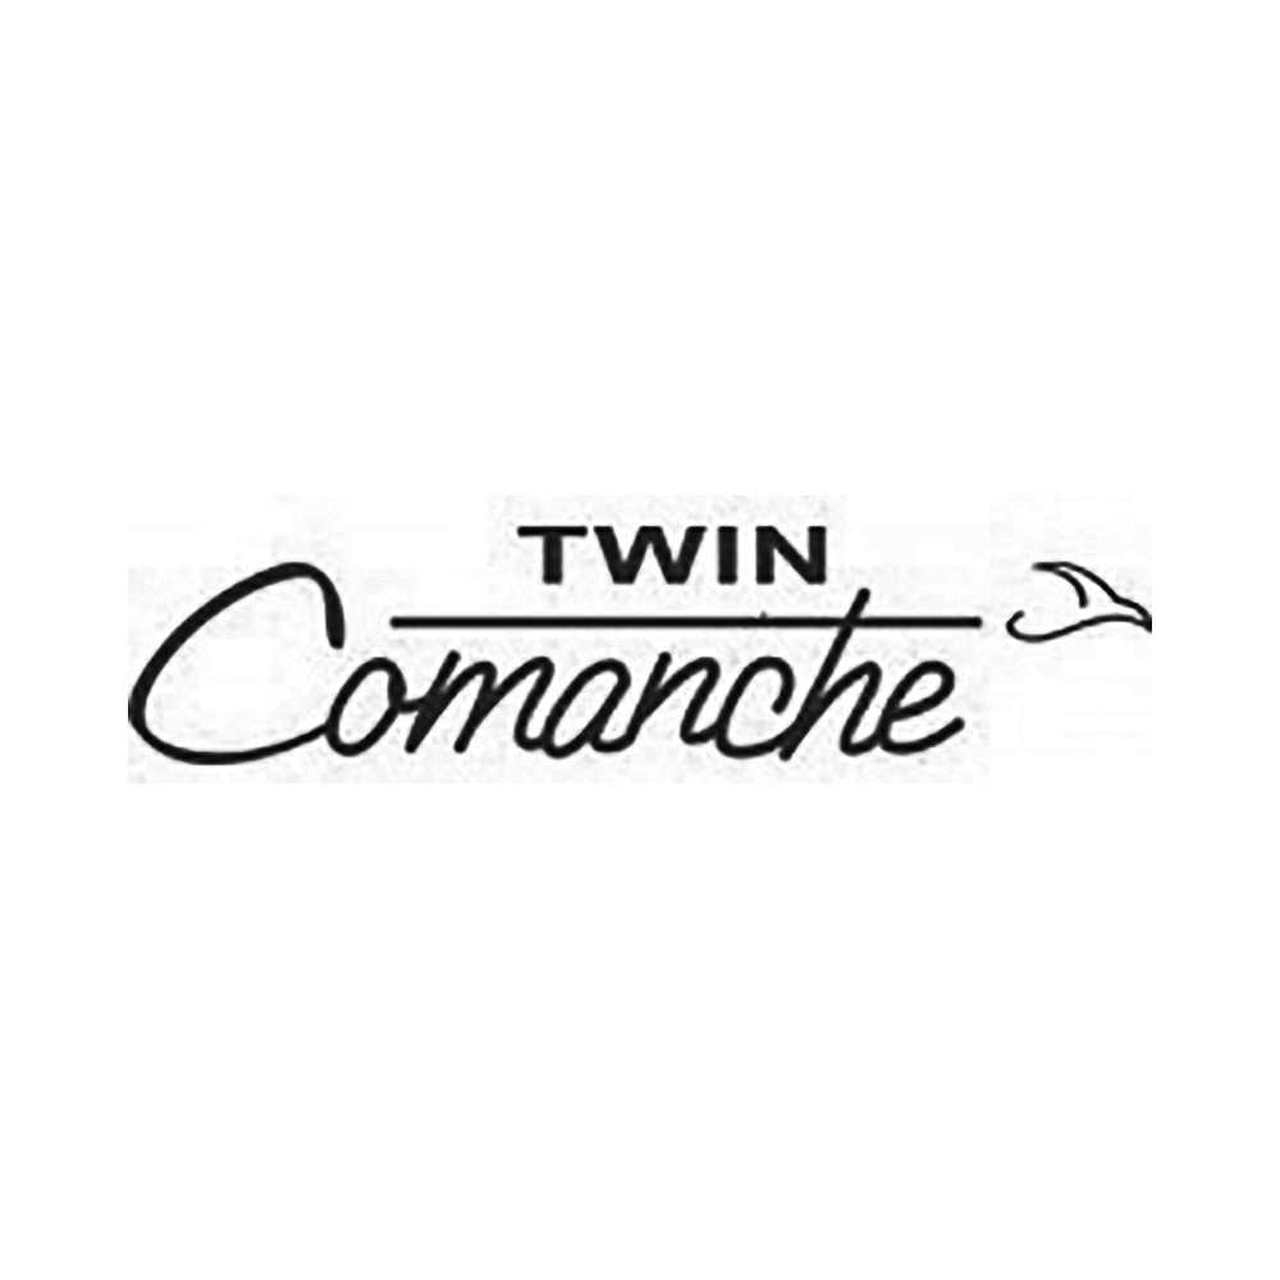 Comanche Logo - Piper Twin Comanche Vinyl Decal Graphic